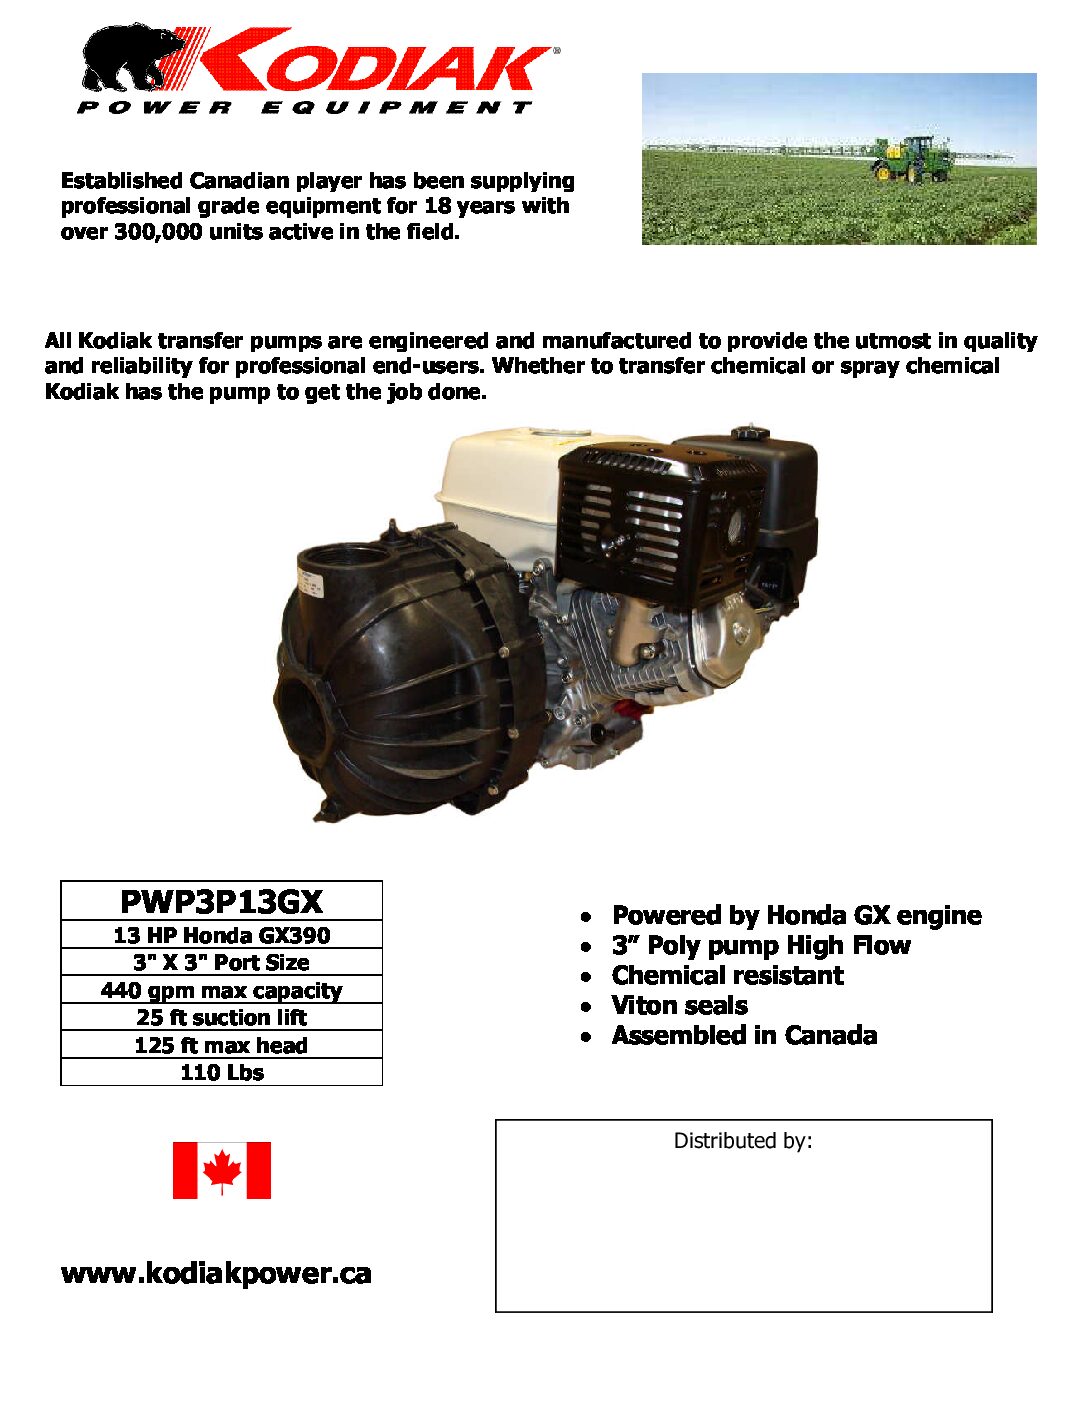 Kodiak PWP3P13GX Water Pumps Product Sheet